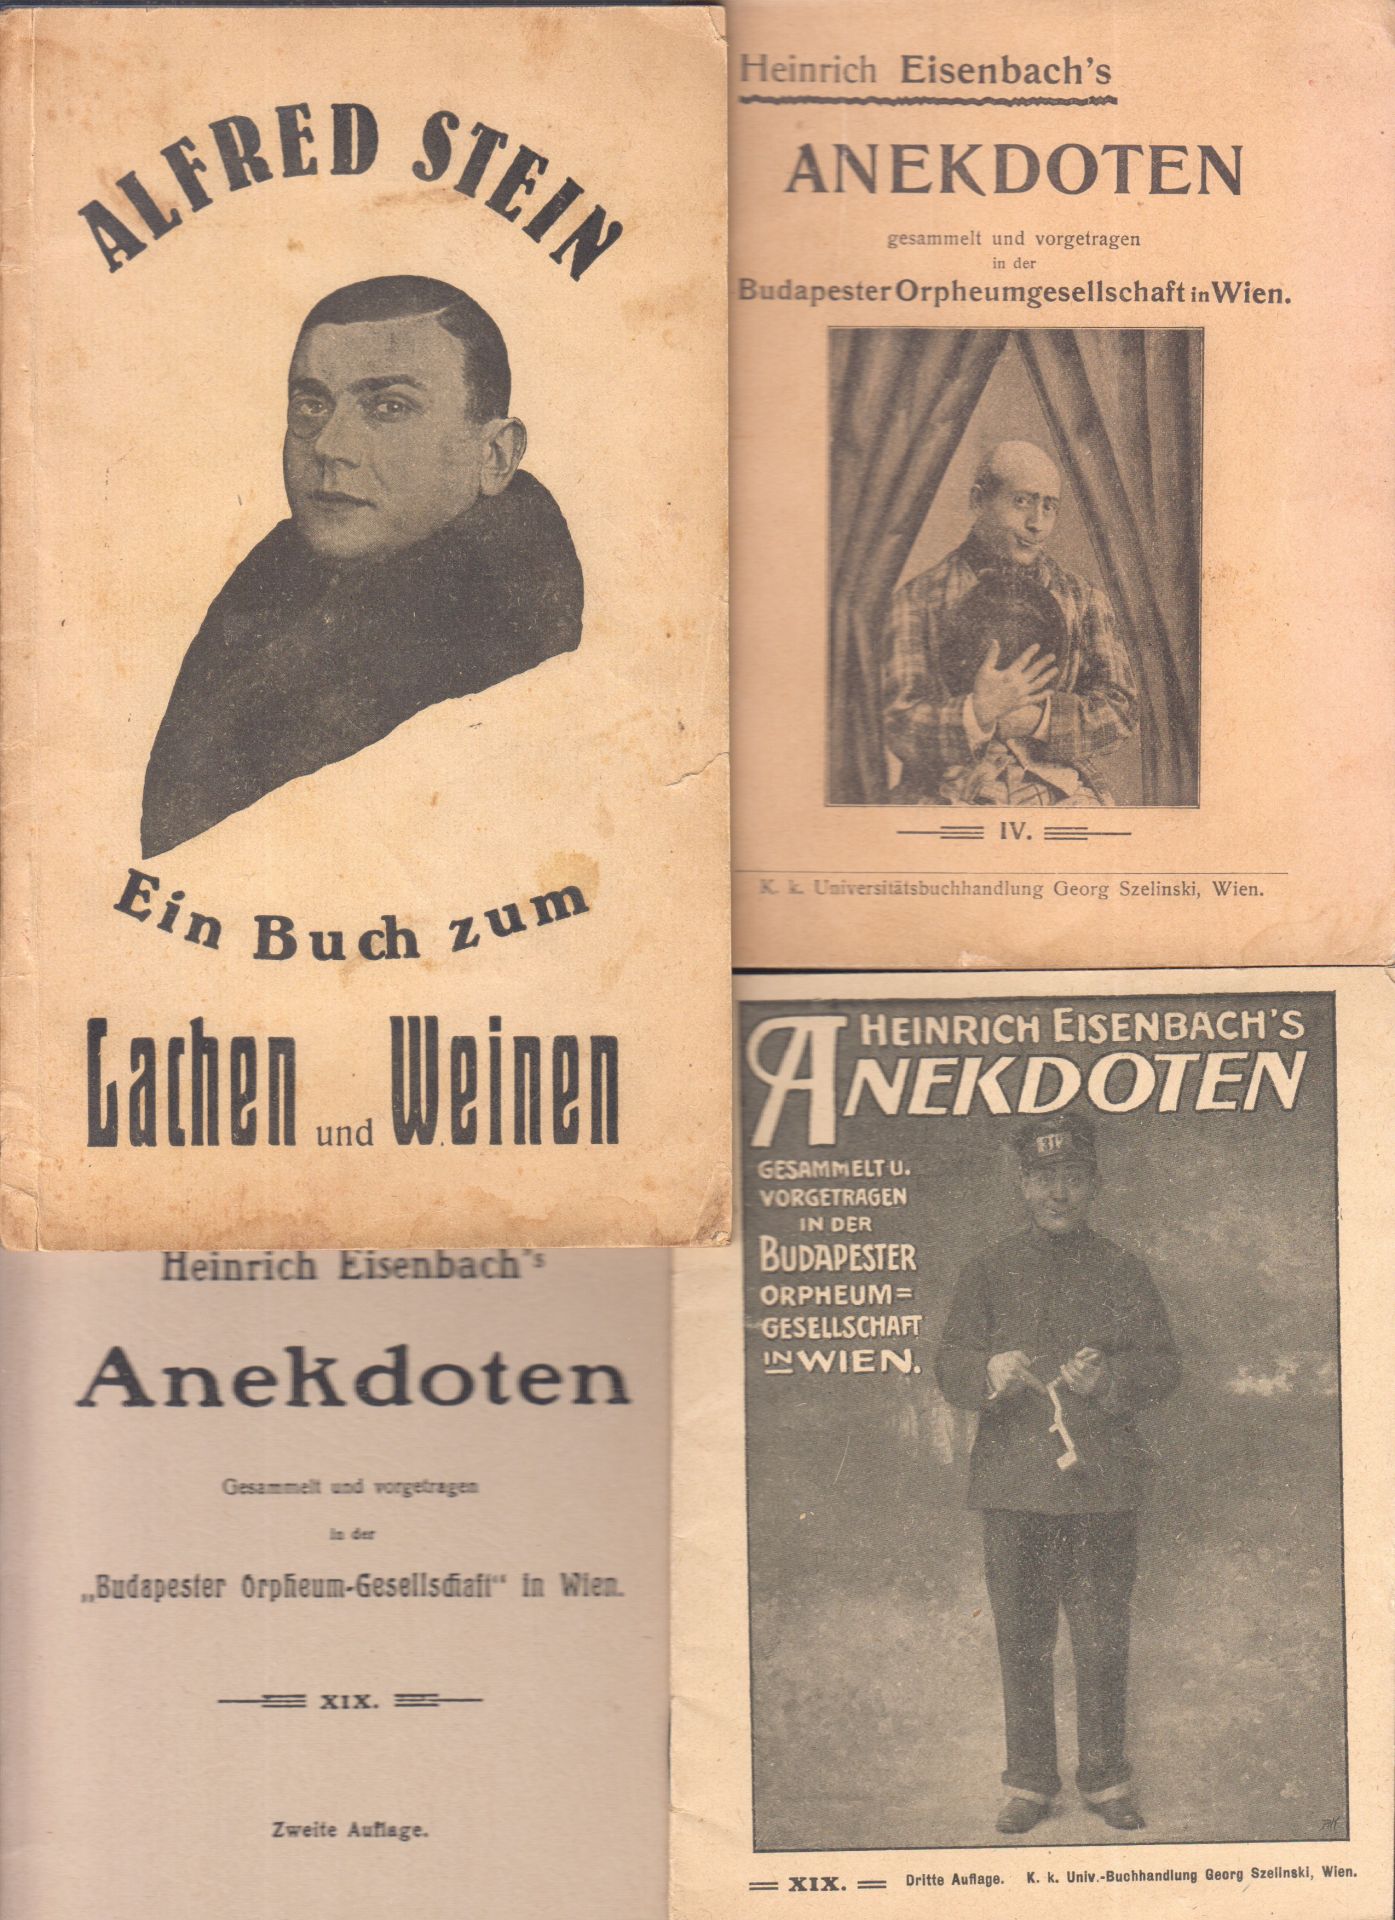 EISENBACH, Heinrich. Anekdoten, ges. u. vorgetr. in der Budapester Orpheumgesellschaft in Wien.